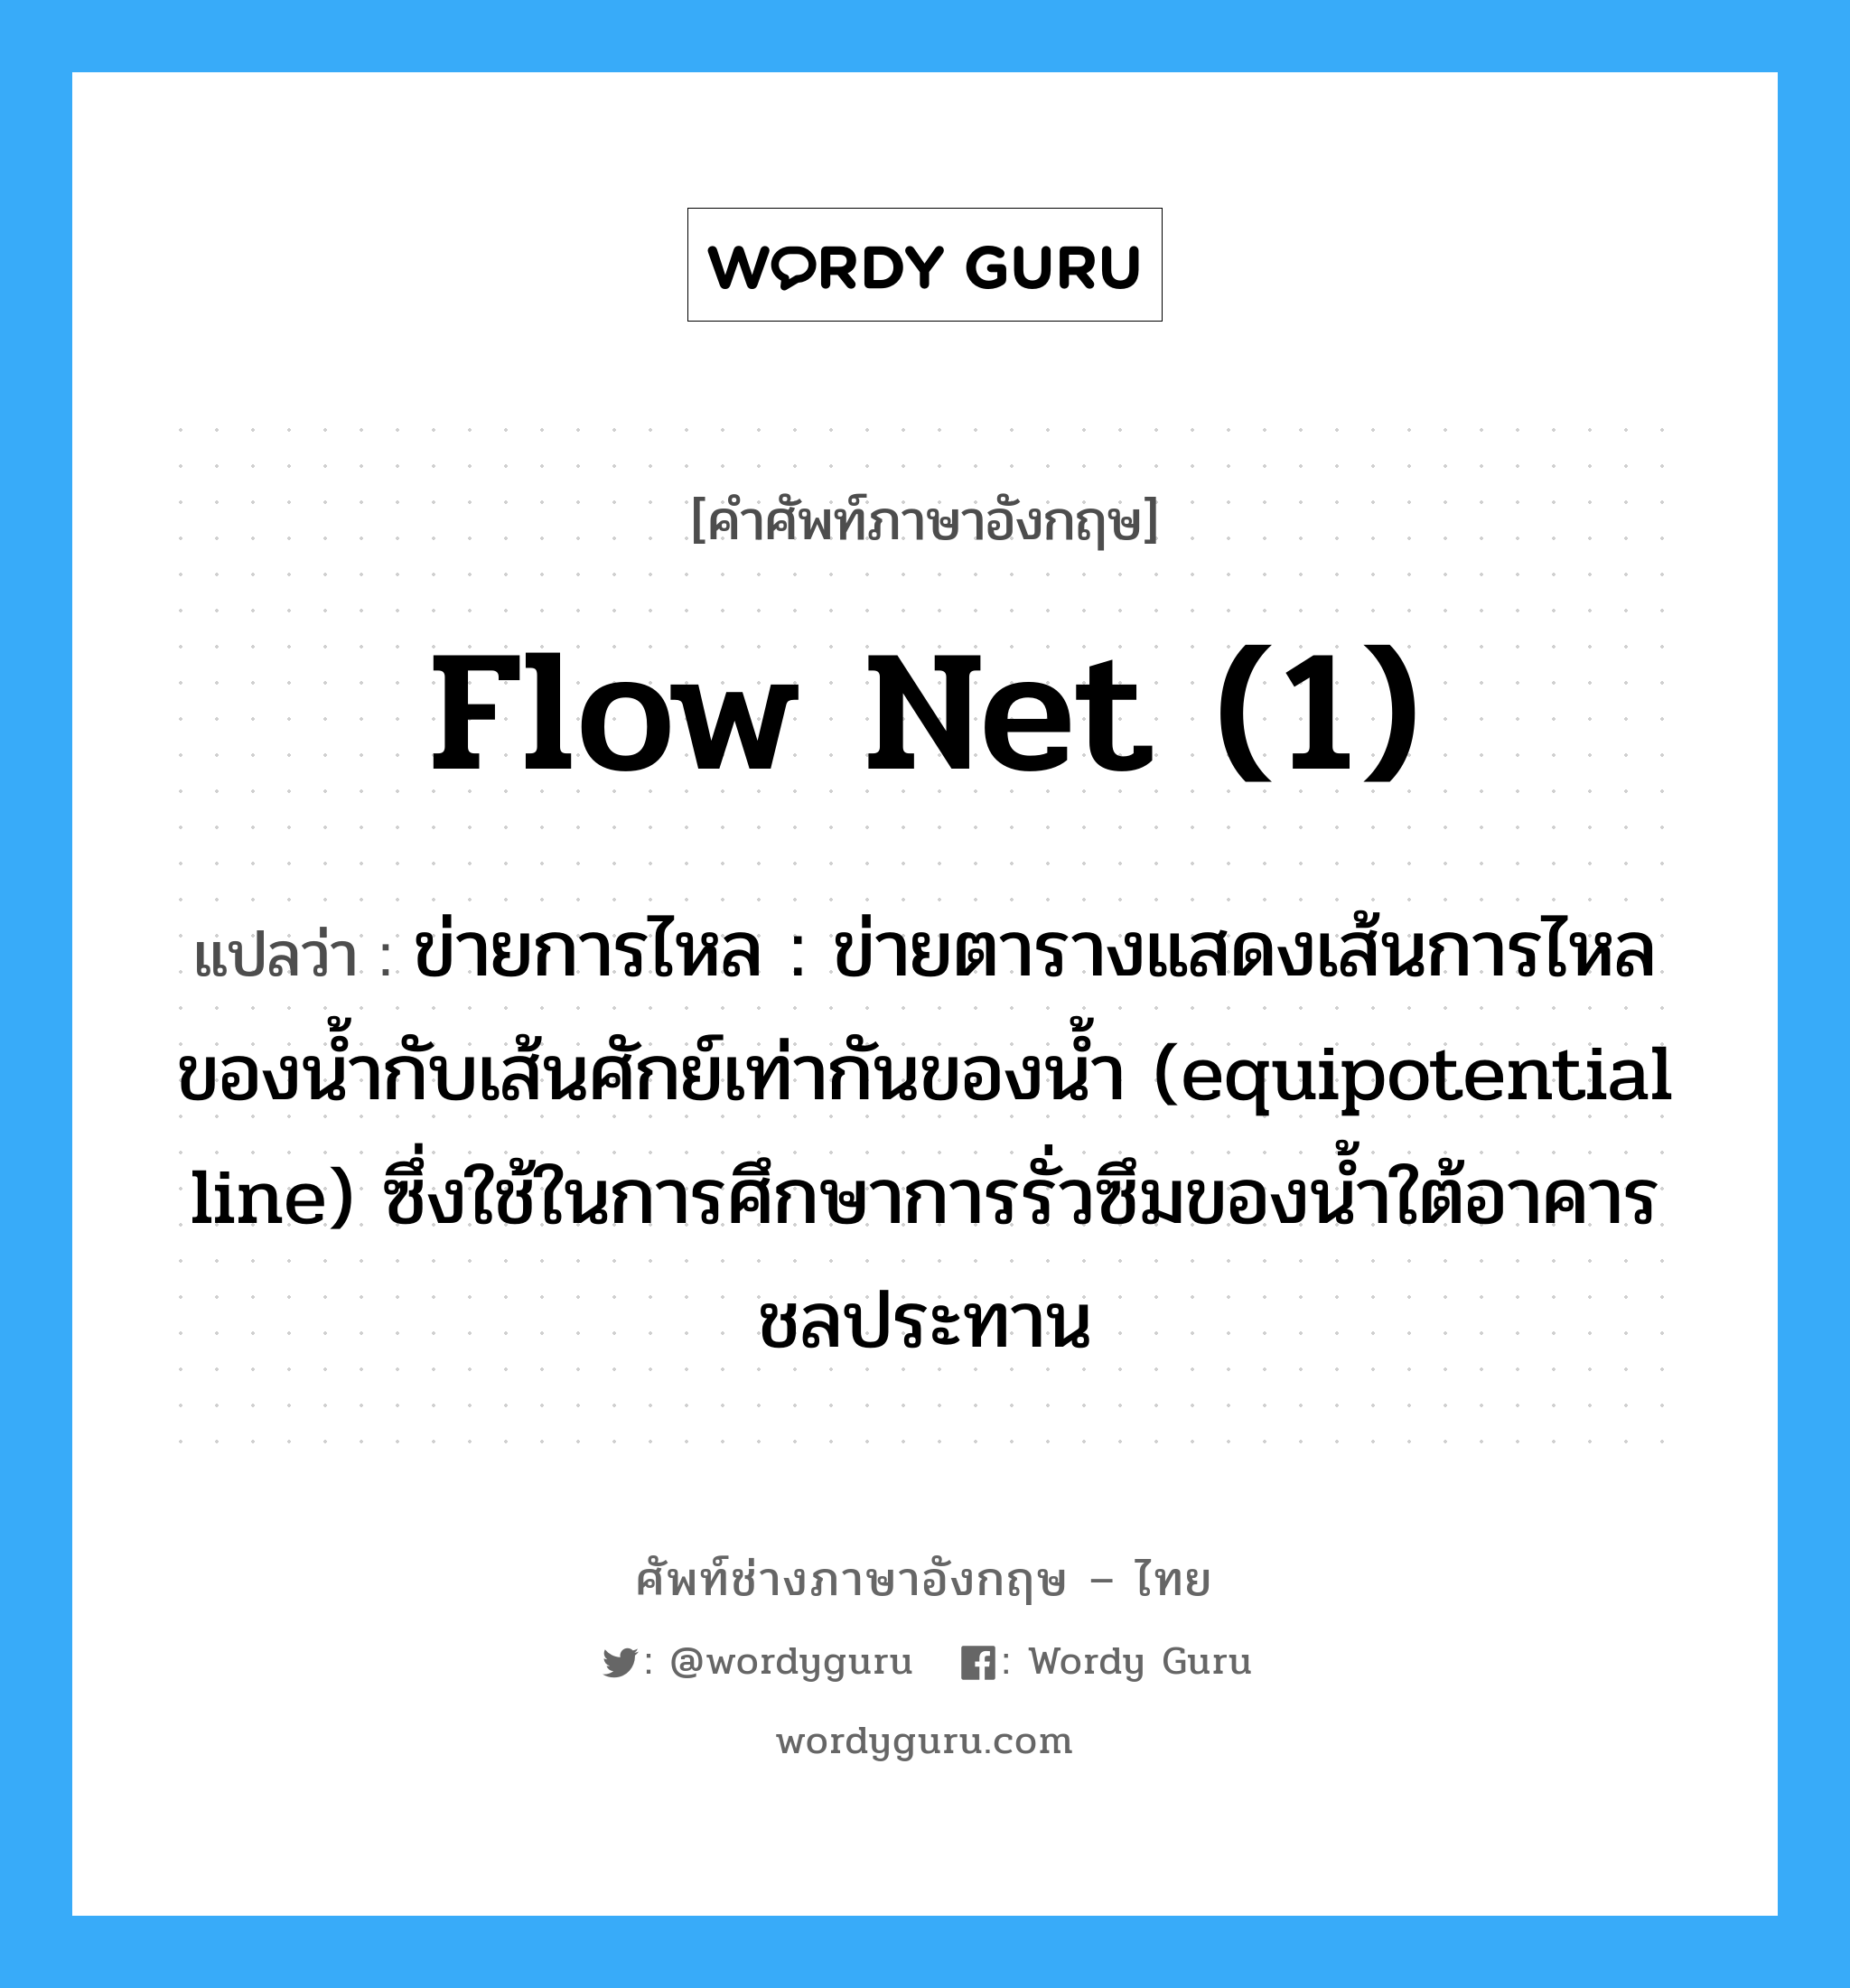 flow net (1) แปลว่า?, คำศัพท์ช่างภาษาอังกฤษ - ไทย flow net (1) คำศัพท์ภาษาอังกฤษ flow net (1) แปลว่า ข่ายการไหล : ข่ายตารางแสดงเส้นการไหลของน้ำกับเส้นศักย์เท่ากันของน้ำ (equipotential line) ซึ่งใช้ในการศึกษาการรั่วซึมของน้ำใต้อาคารชลประทาน